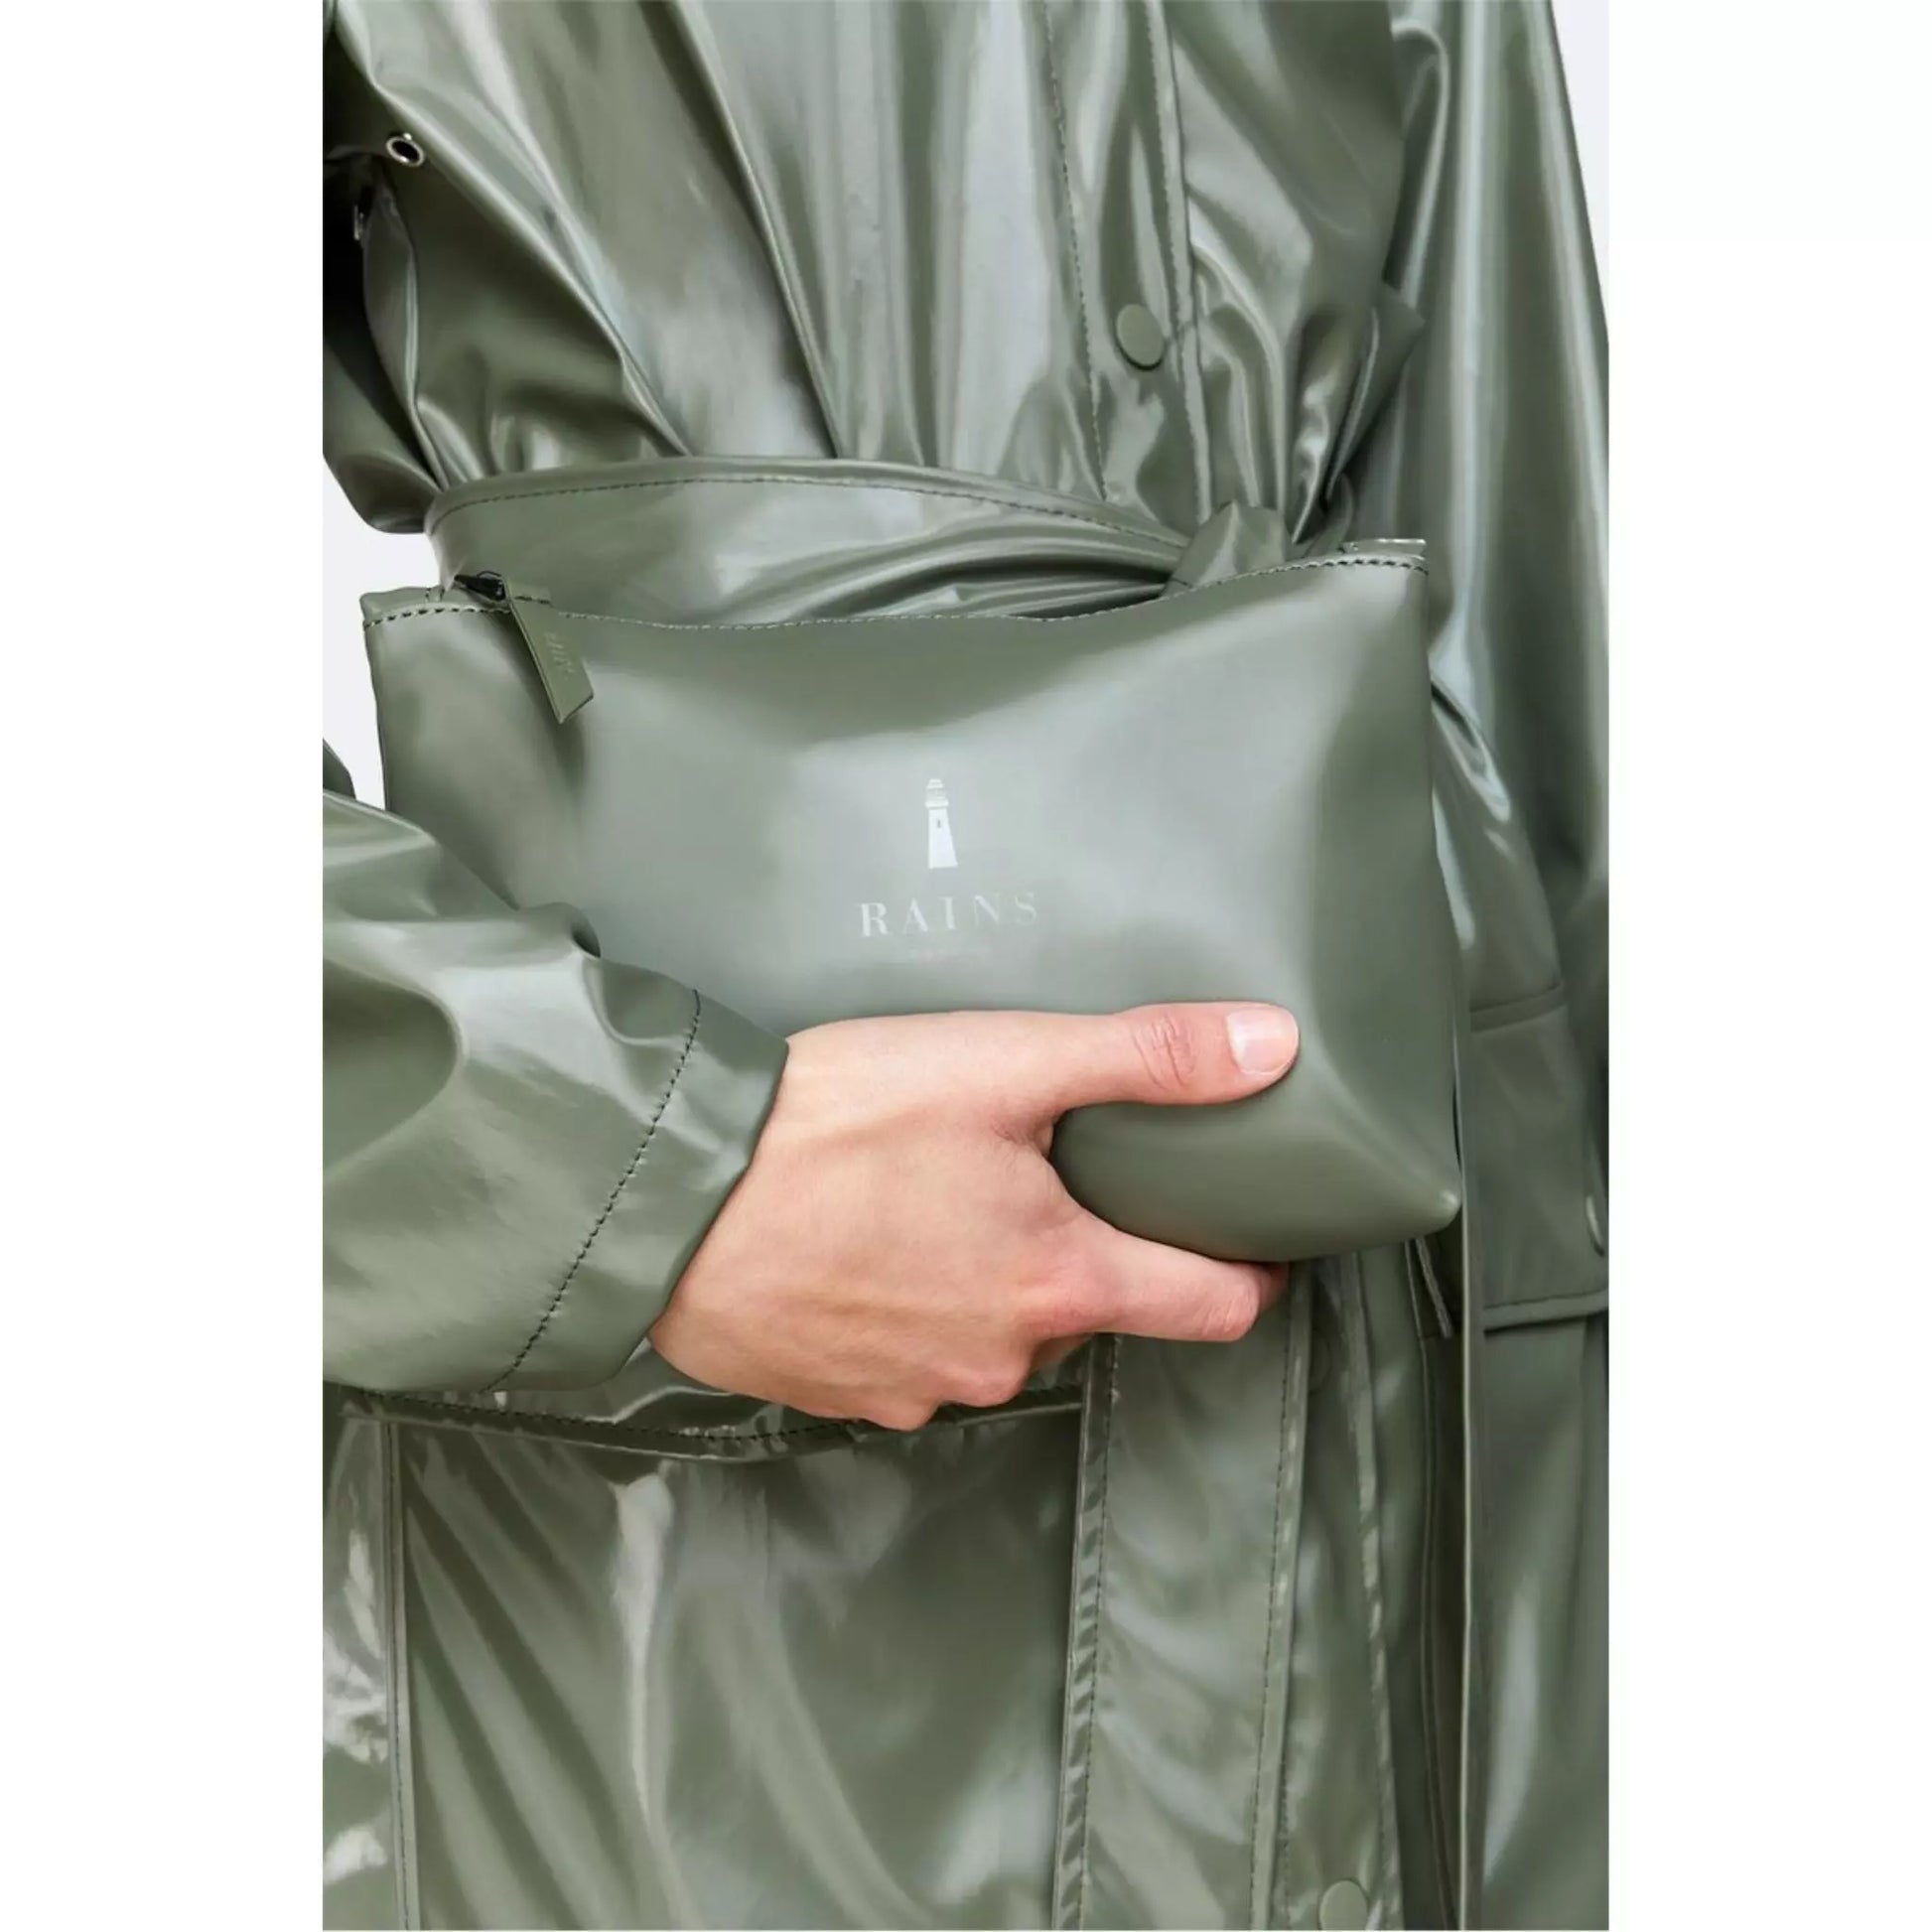 Rains waterproof cosmetic bag green held by men